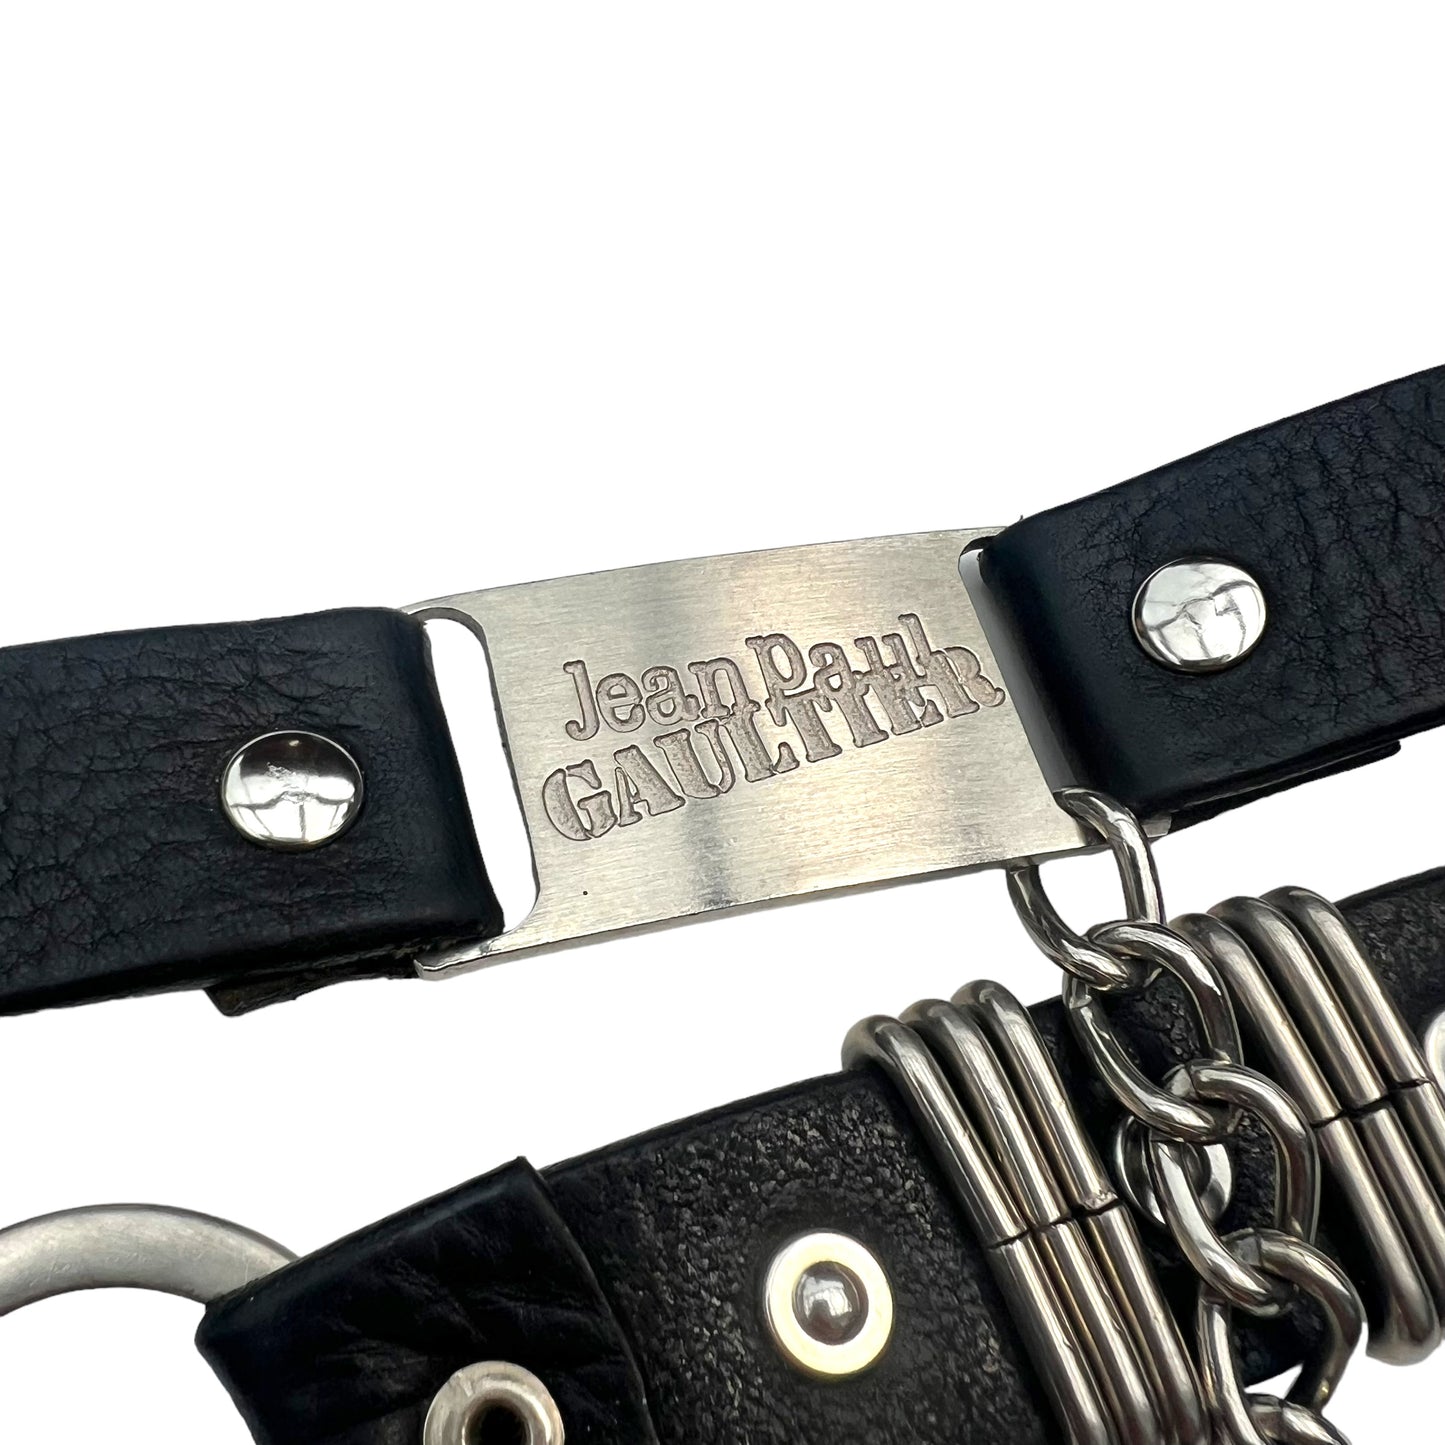 Vintage Jean Paul Gaultier chain belt